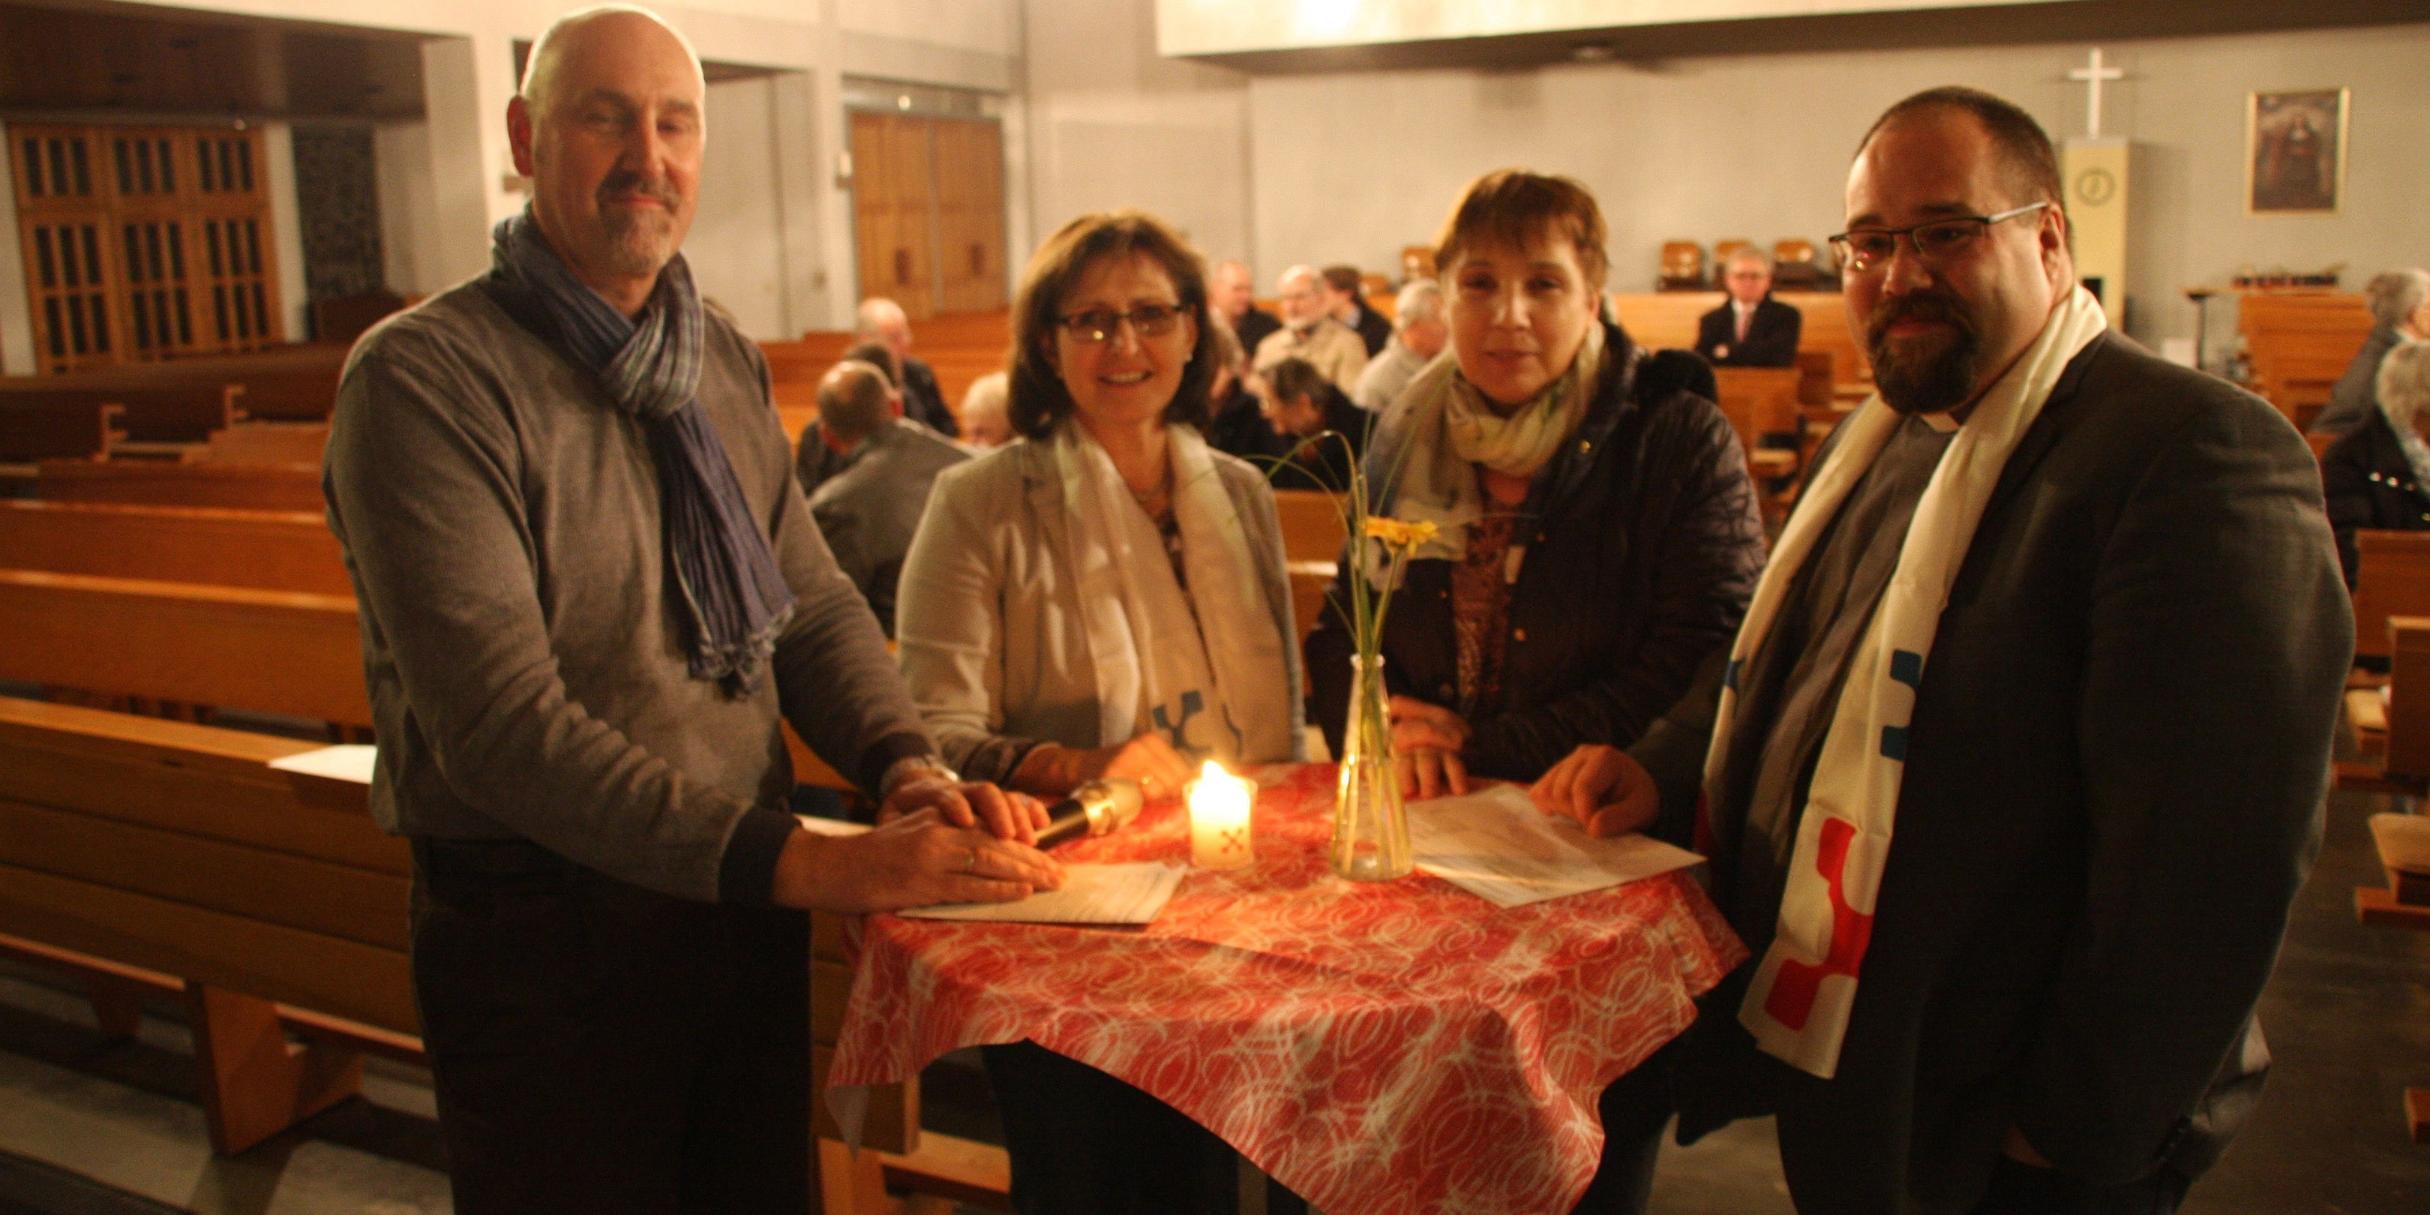 Heinrich Malcher, Margit Ebbecke, Elisabeth Beiling und Andreas Burg beim Synoden-Infoabend (v.l.n.r.)